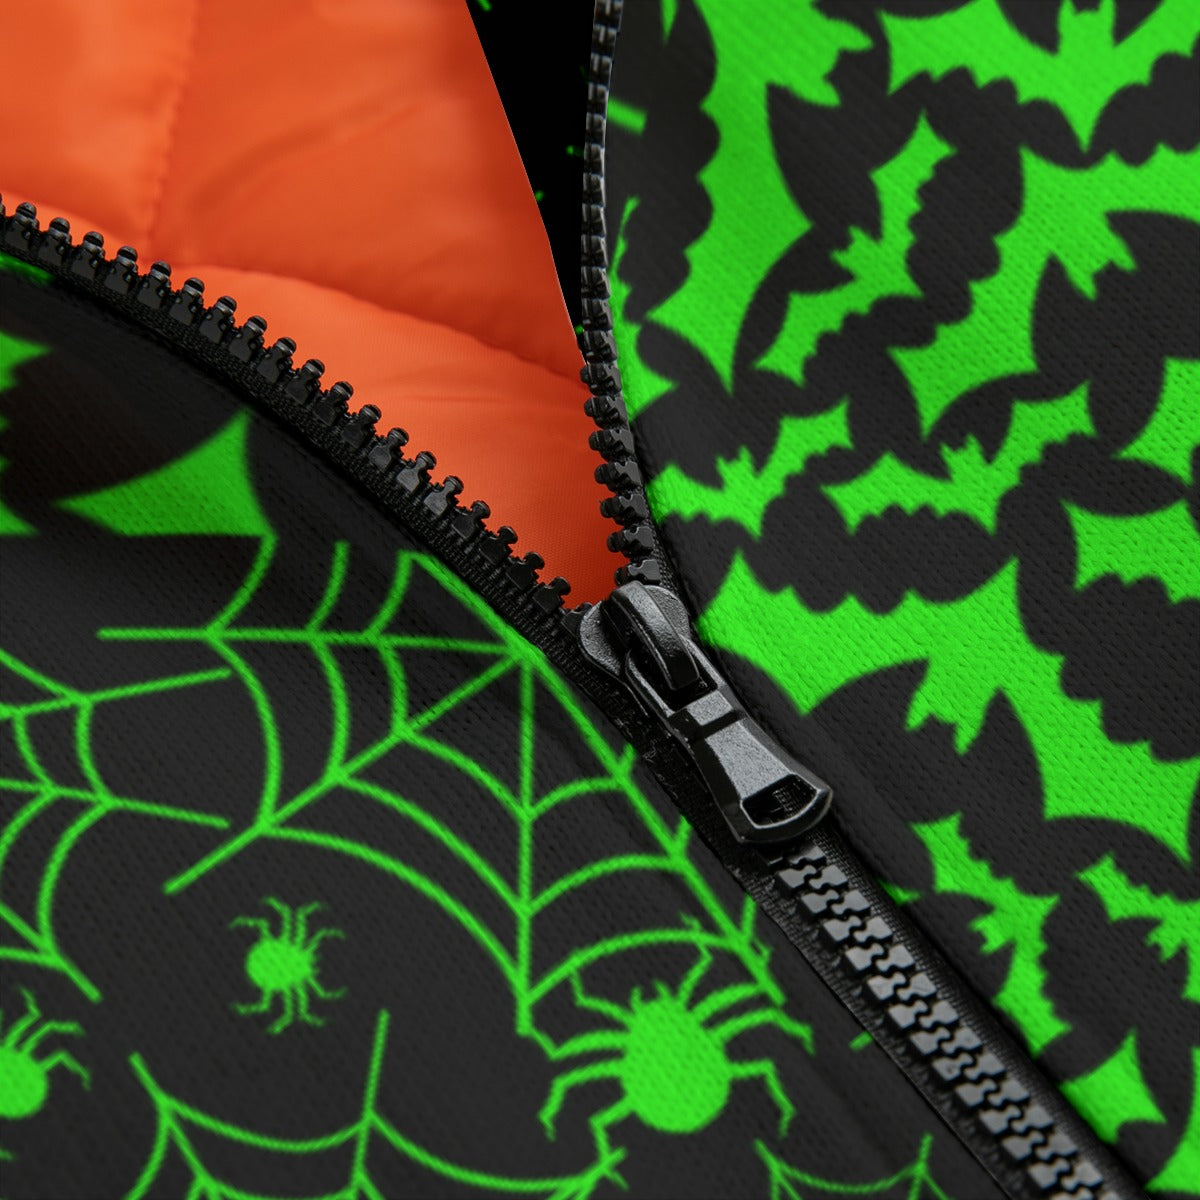 Neon Green Split Bat & Spiderweb Fleece Bomber Jacket spookydoll